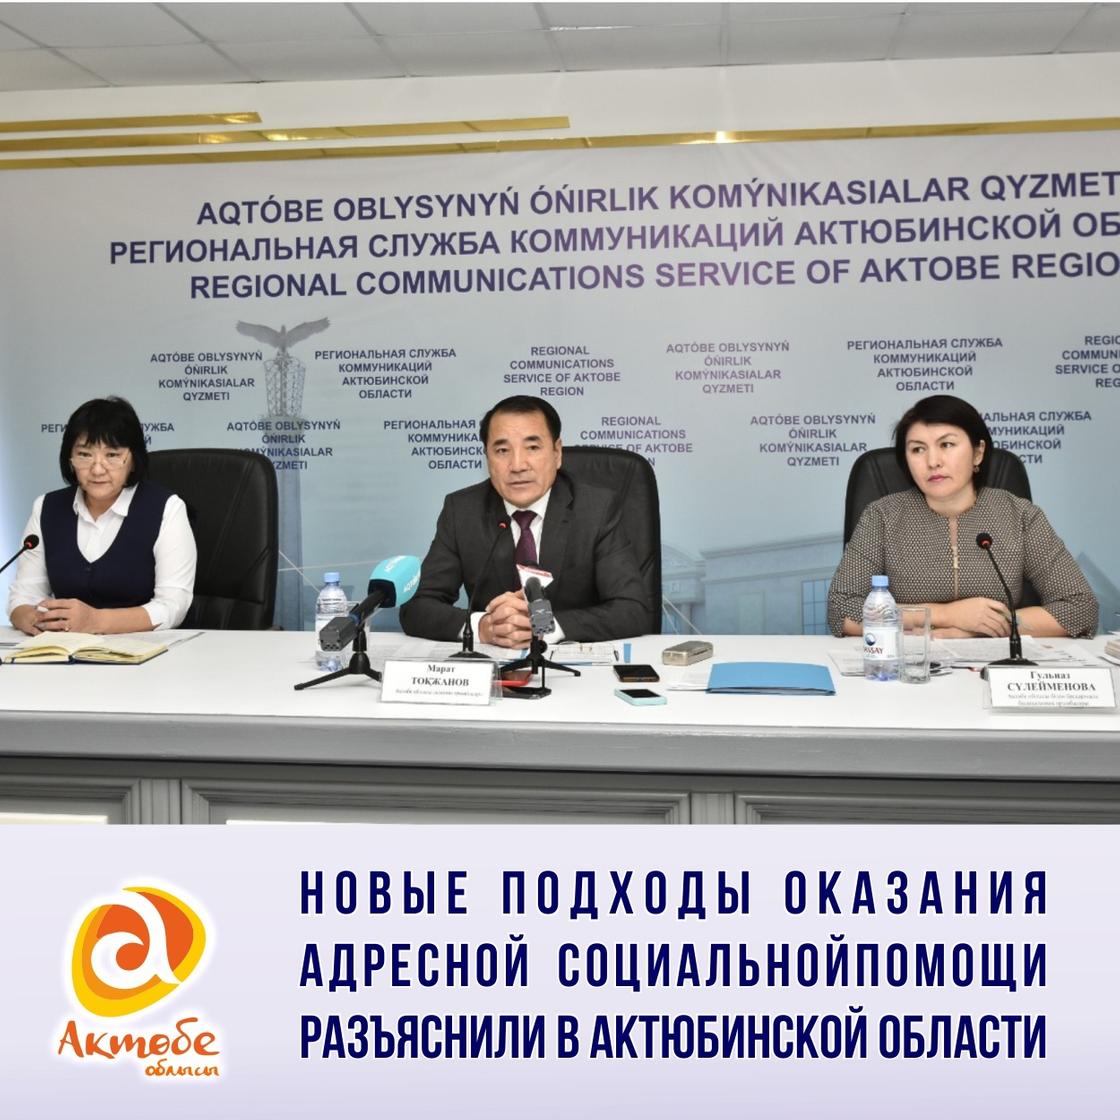 Новые подходы оказания адресной социальной помощи разъяснили в Актюбинской области